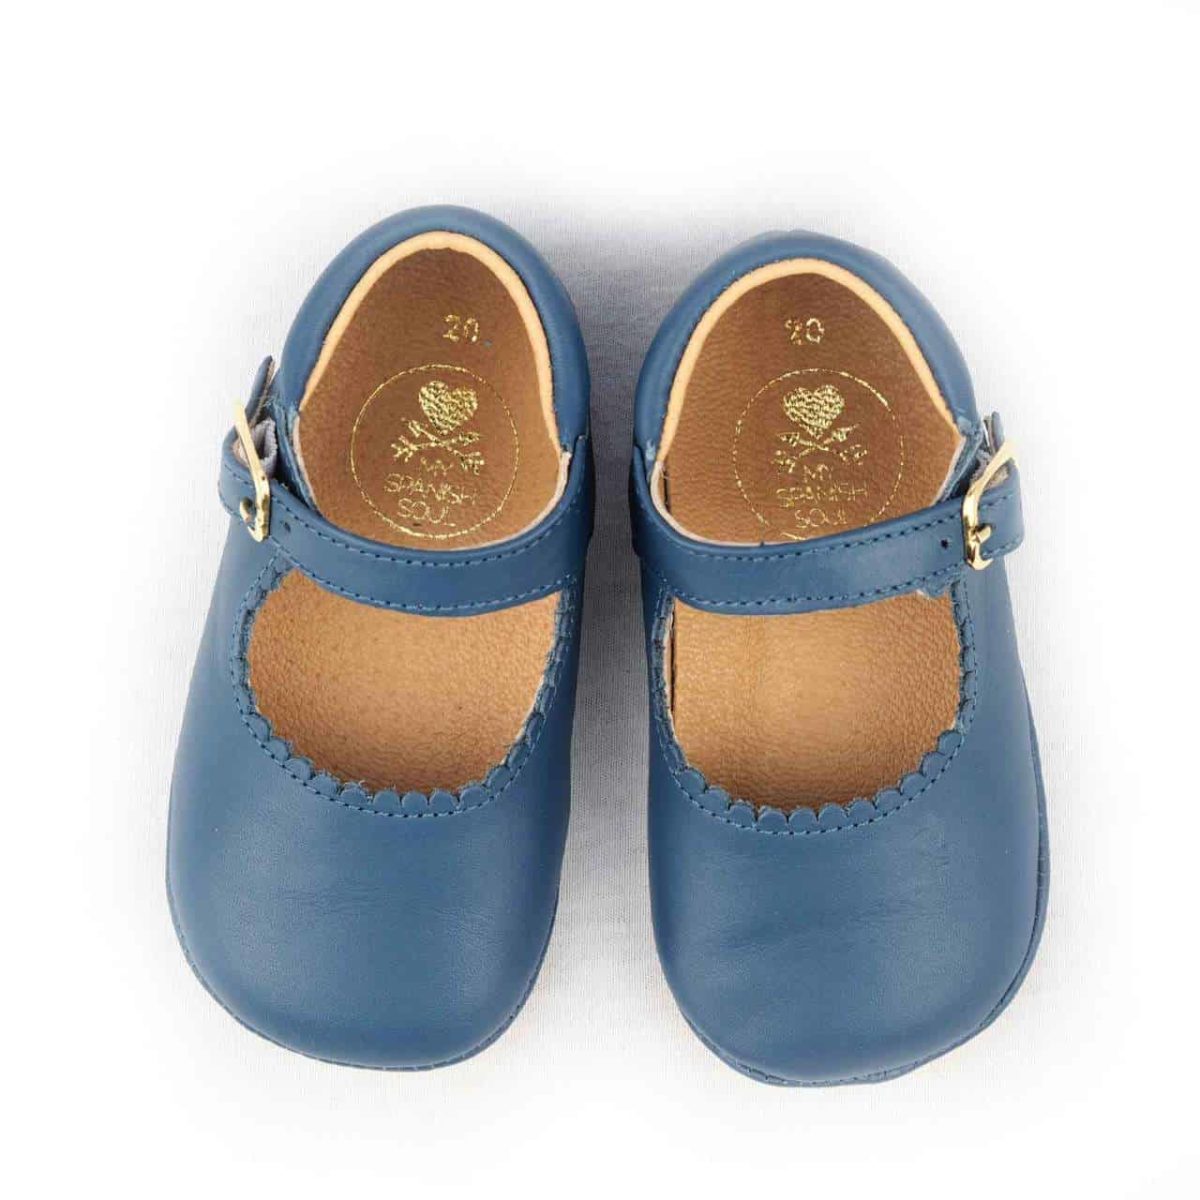 Mädchen Baby Schuhe Leder Neugeborenen Säugling Echtleder weiß Made In Spain